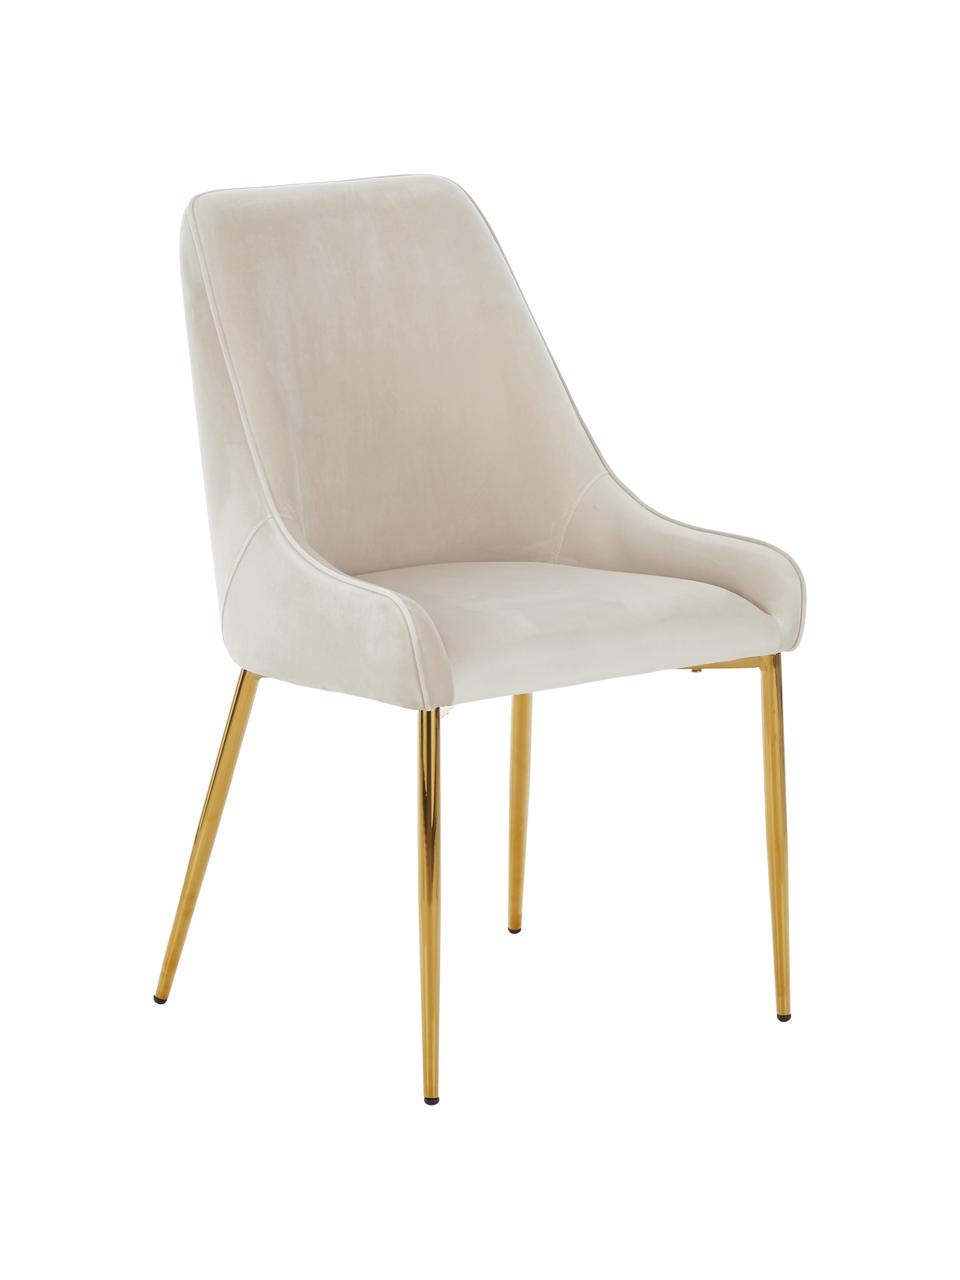 Krzesło tapicerowane z aksamitu Ava, Tapicerka: aksamit (100% poliester) , Nogi: metal galwanizowany, Beżowy aksamit, S 53 x G 60 cm